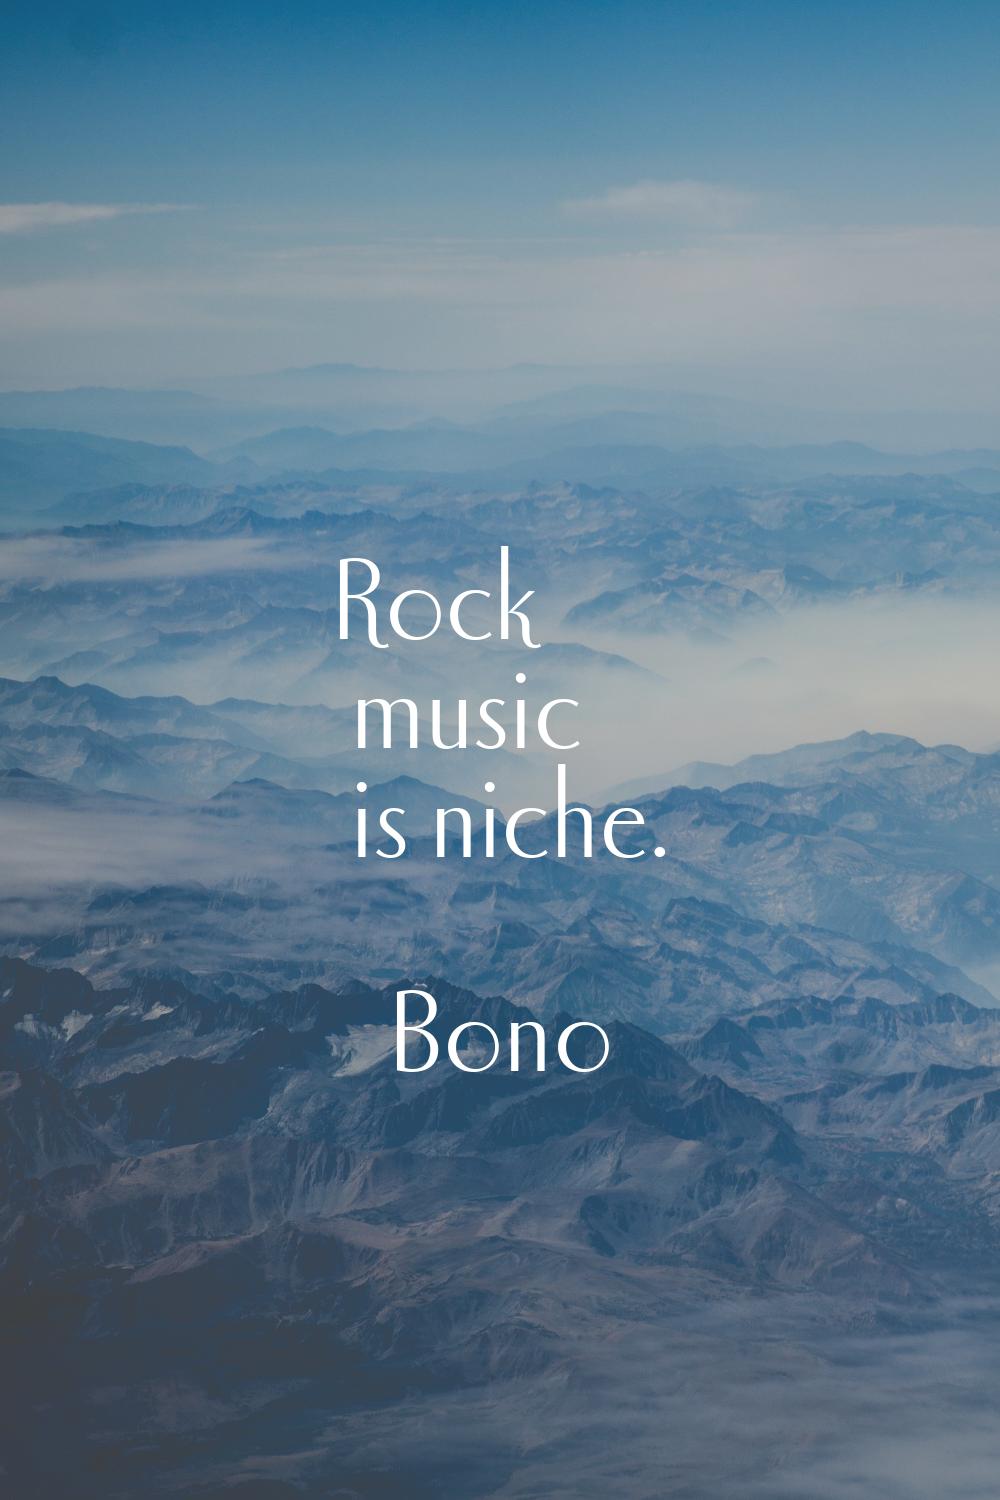 Rock music is niche.